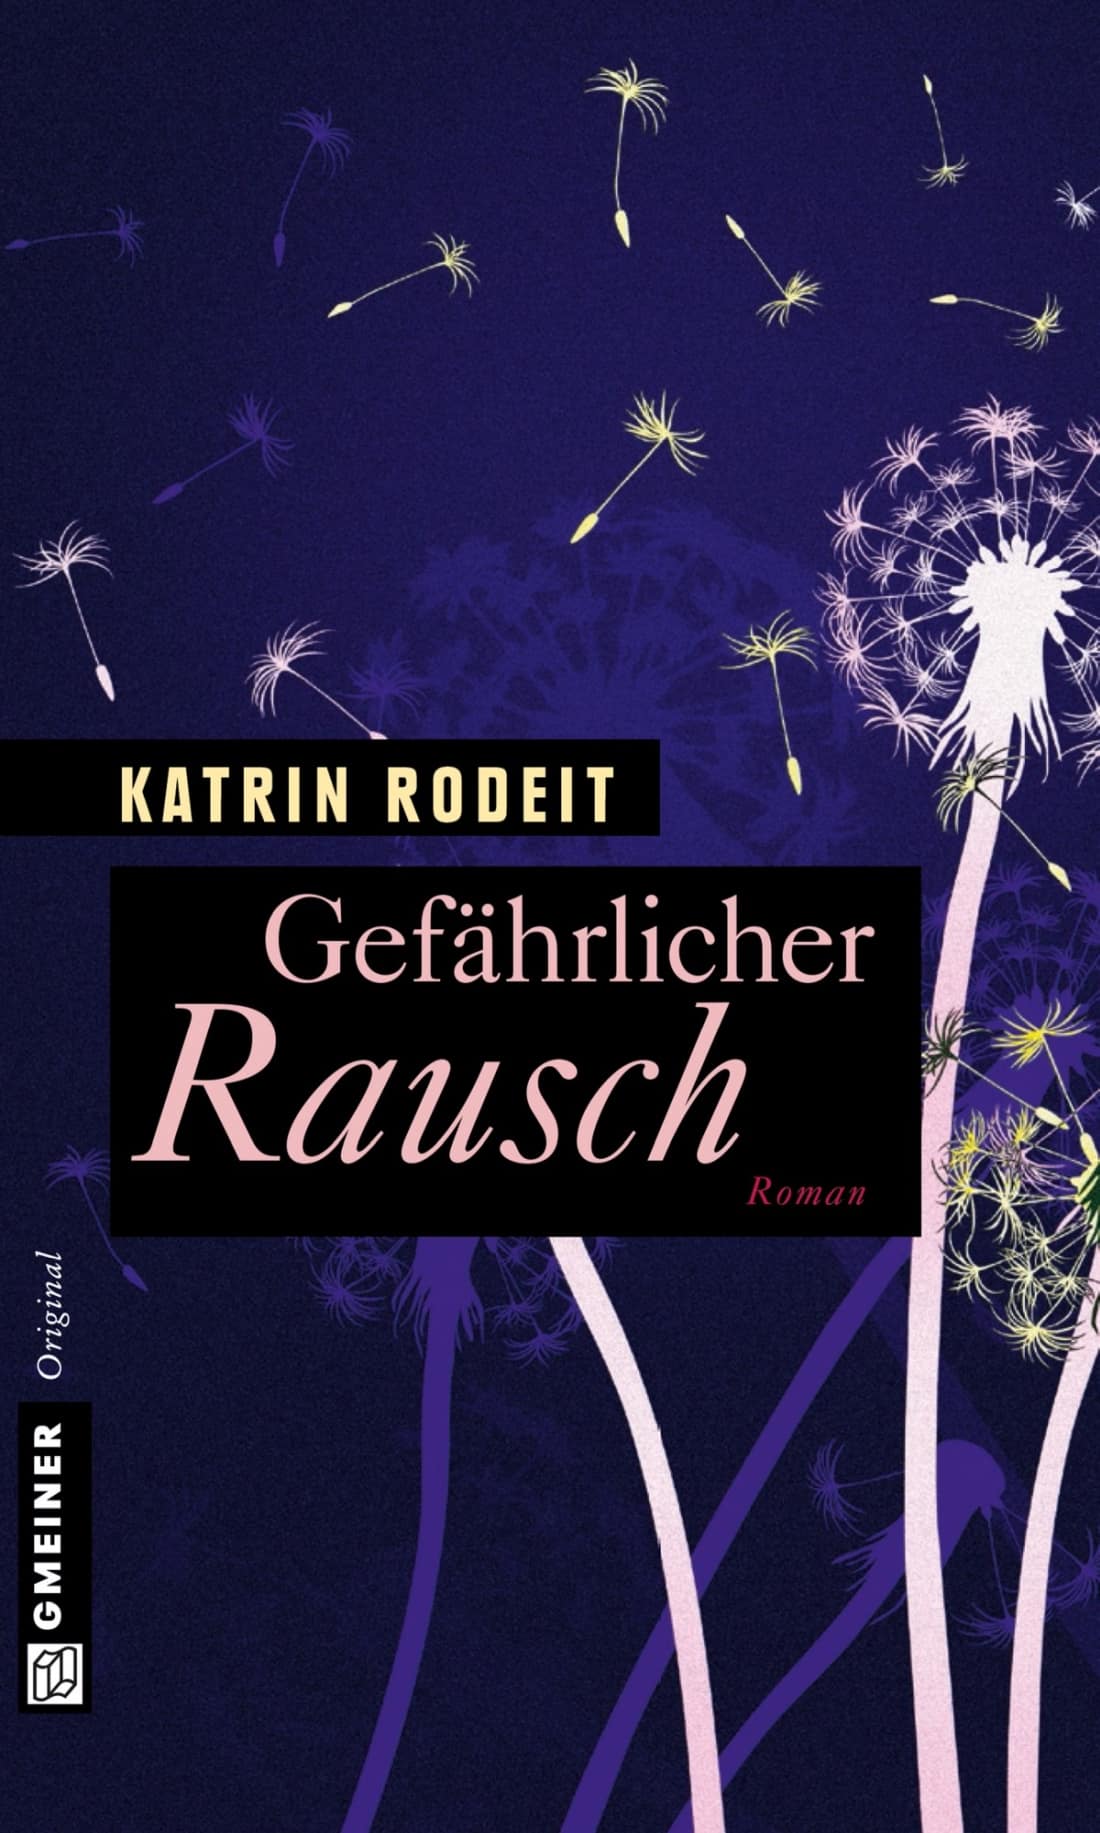 LITL389 [Podcast-Interview] mit Katrin Rodeit über das Buch: Gefährlicher Rausch